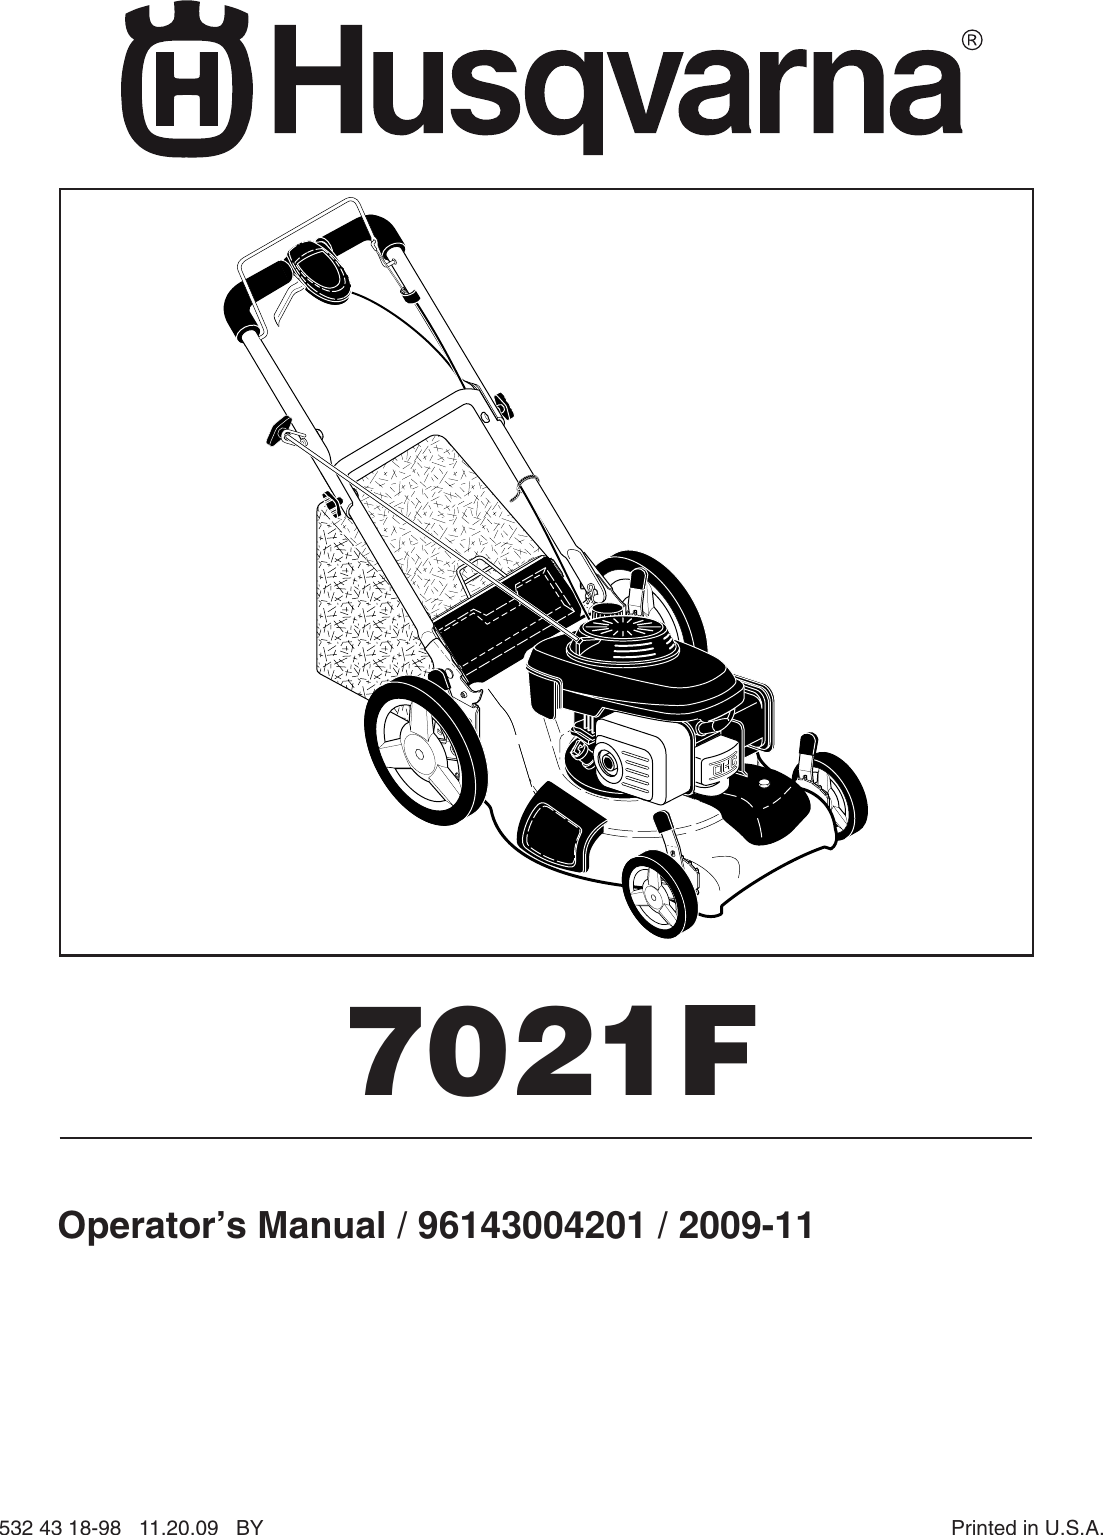 Husqvarna 7021f Users Manual Om 7021f 2009 11 Lawn Mowers